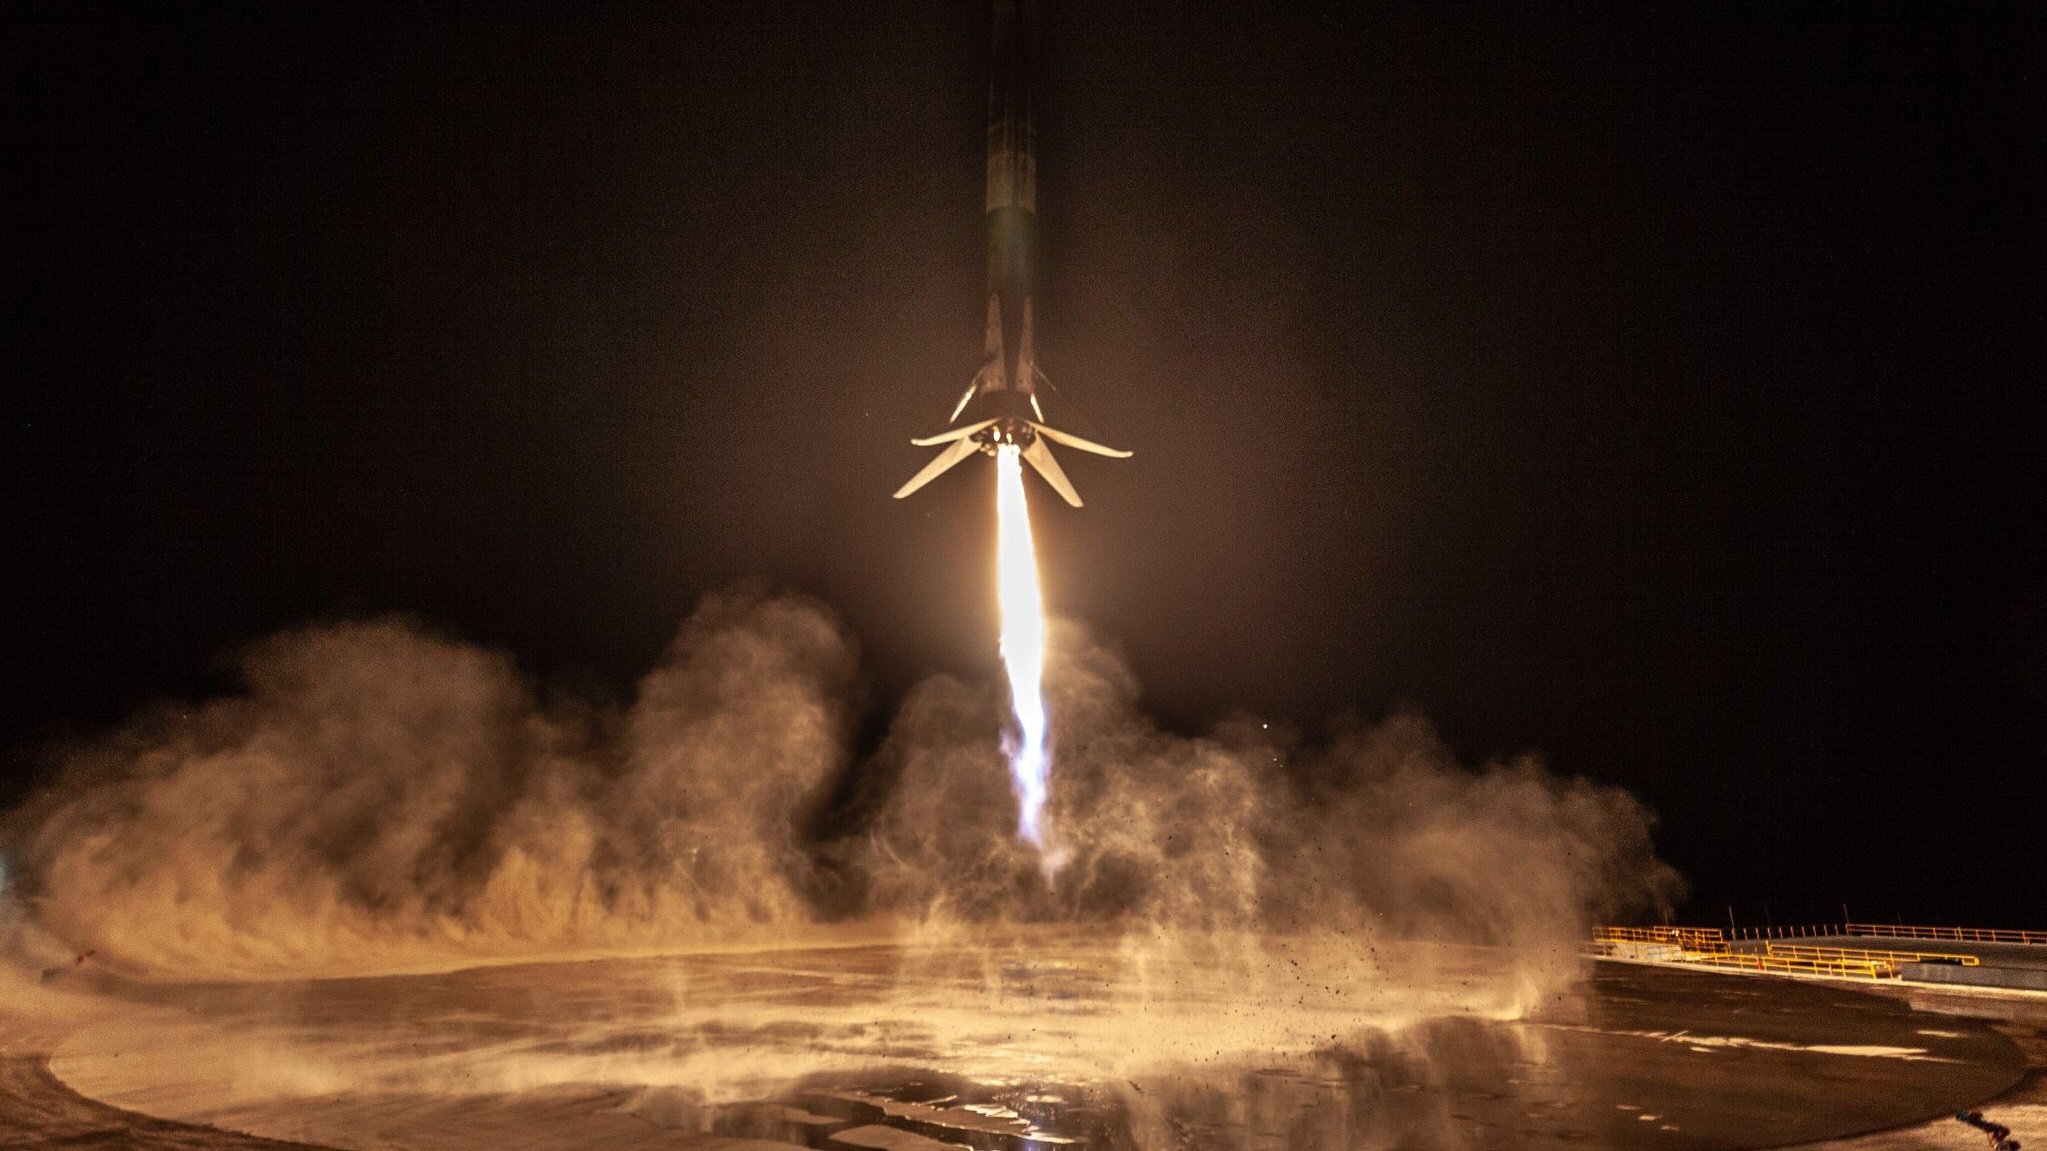 سبيس اكس أول هبوط ناجح فالكون 9 صواريخ على ساحل كاليفورنيا